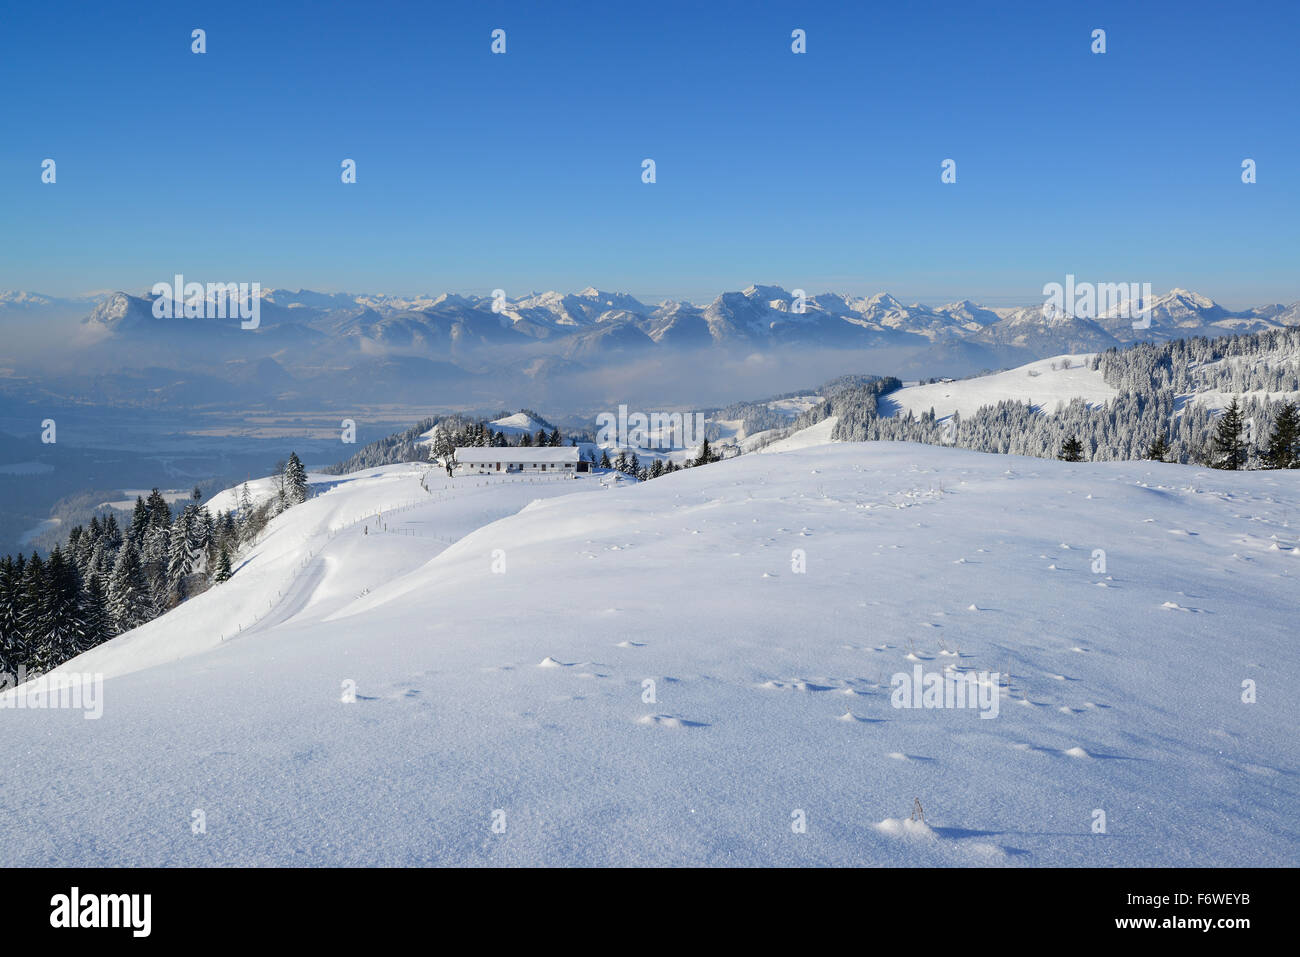 Schneebedeckten Alpen Brennkopf, Tal des Inn und Mangfall reichen im Hintergrund, Brennkopf, Chiemgau-Bereich, Tirol, Österreich Stockfoto